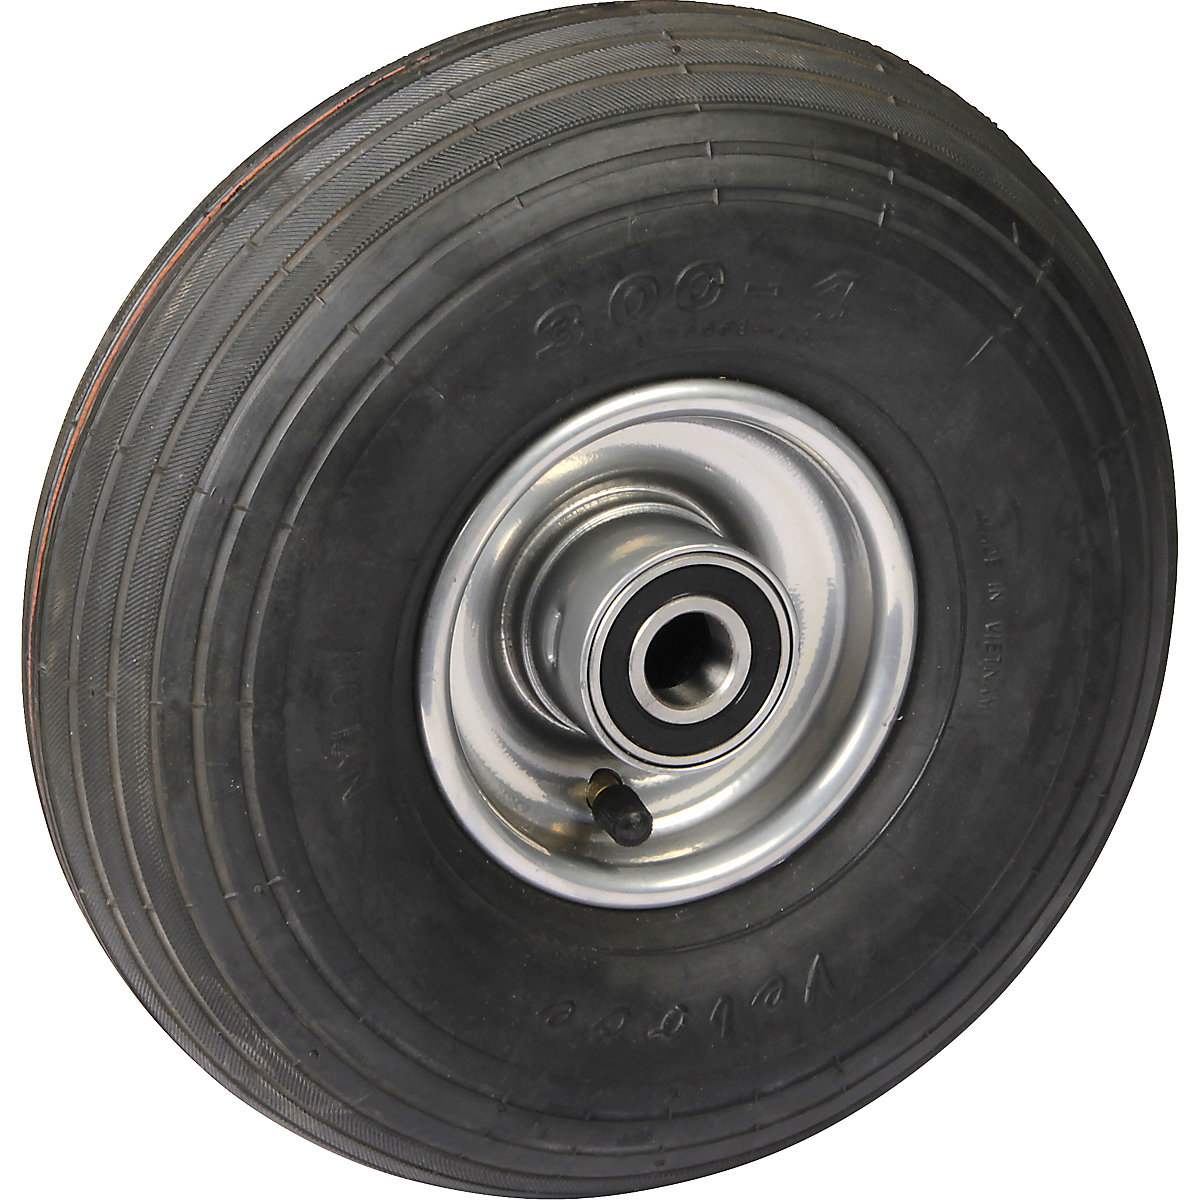 Luchtband, wiel met 1-delige plaatstalen velg, wiel-Ø x breedte = 260 x 85 mm, lijnprofiel, met kogellager-5